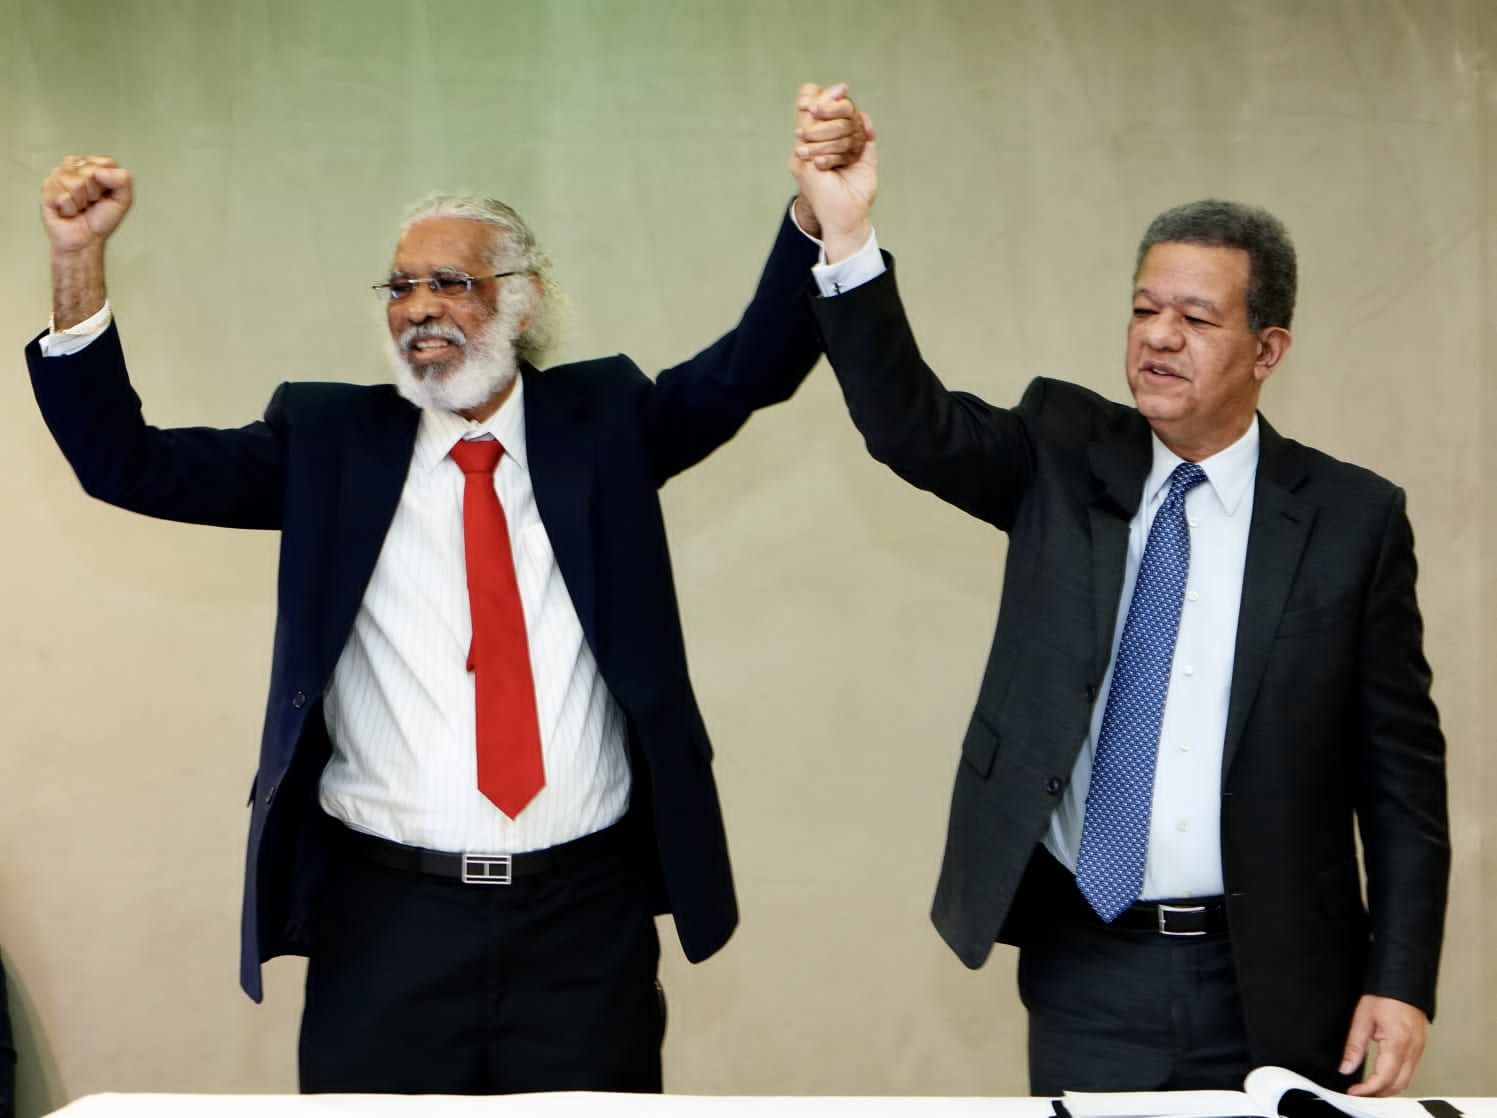 "El cambio se ha convertido en un retroceso" asegura Leonel al firmar acuerdo electoral con Juan Hubieres